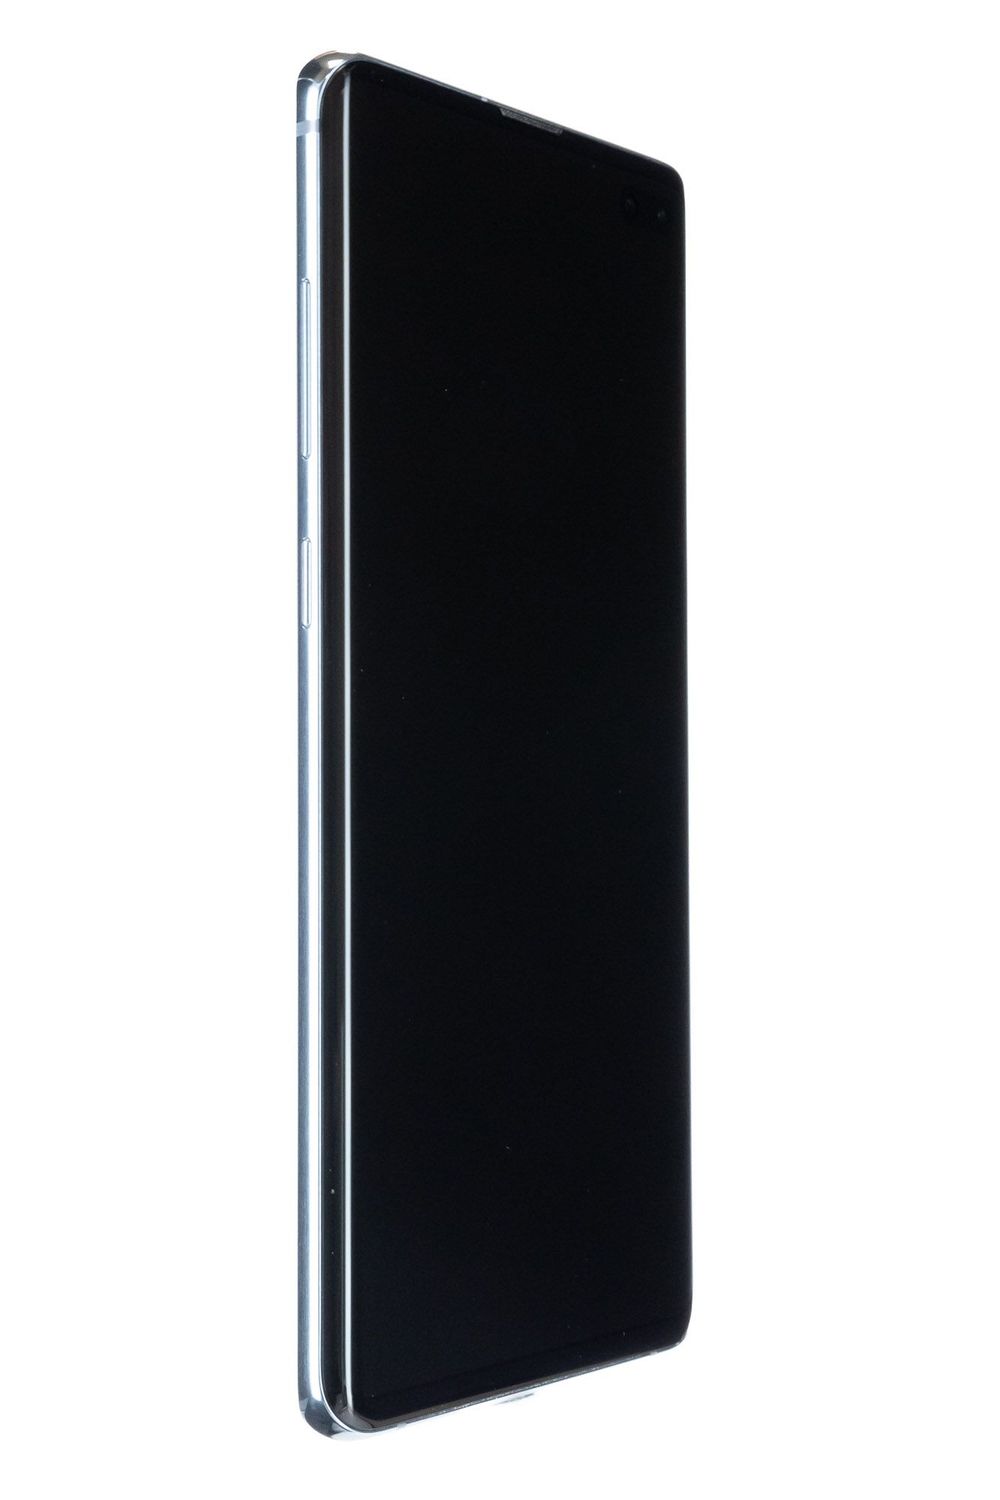 Κινητό τηλέφωνο Samsung Galaxy S10 Plus Dual Sim, Prism Blue, 128 GB, Bun